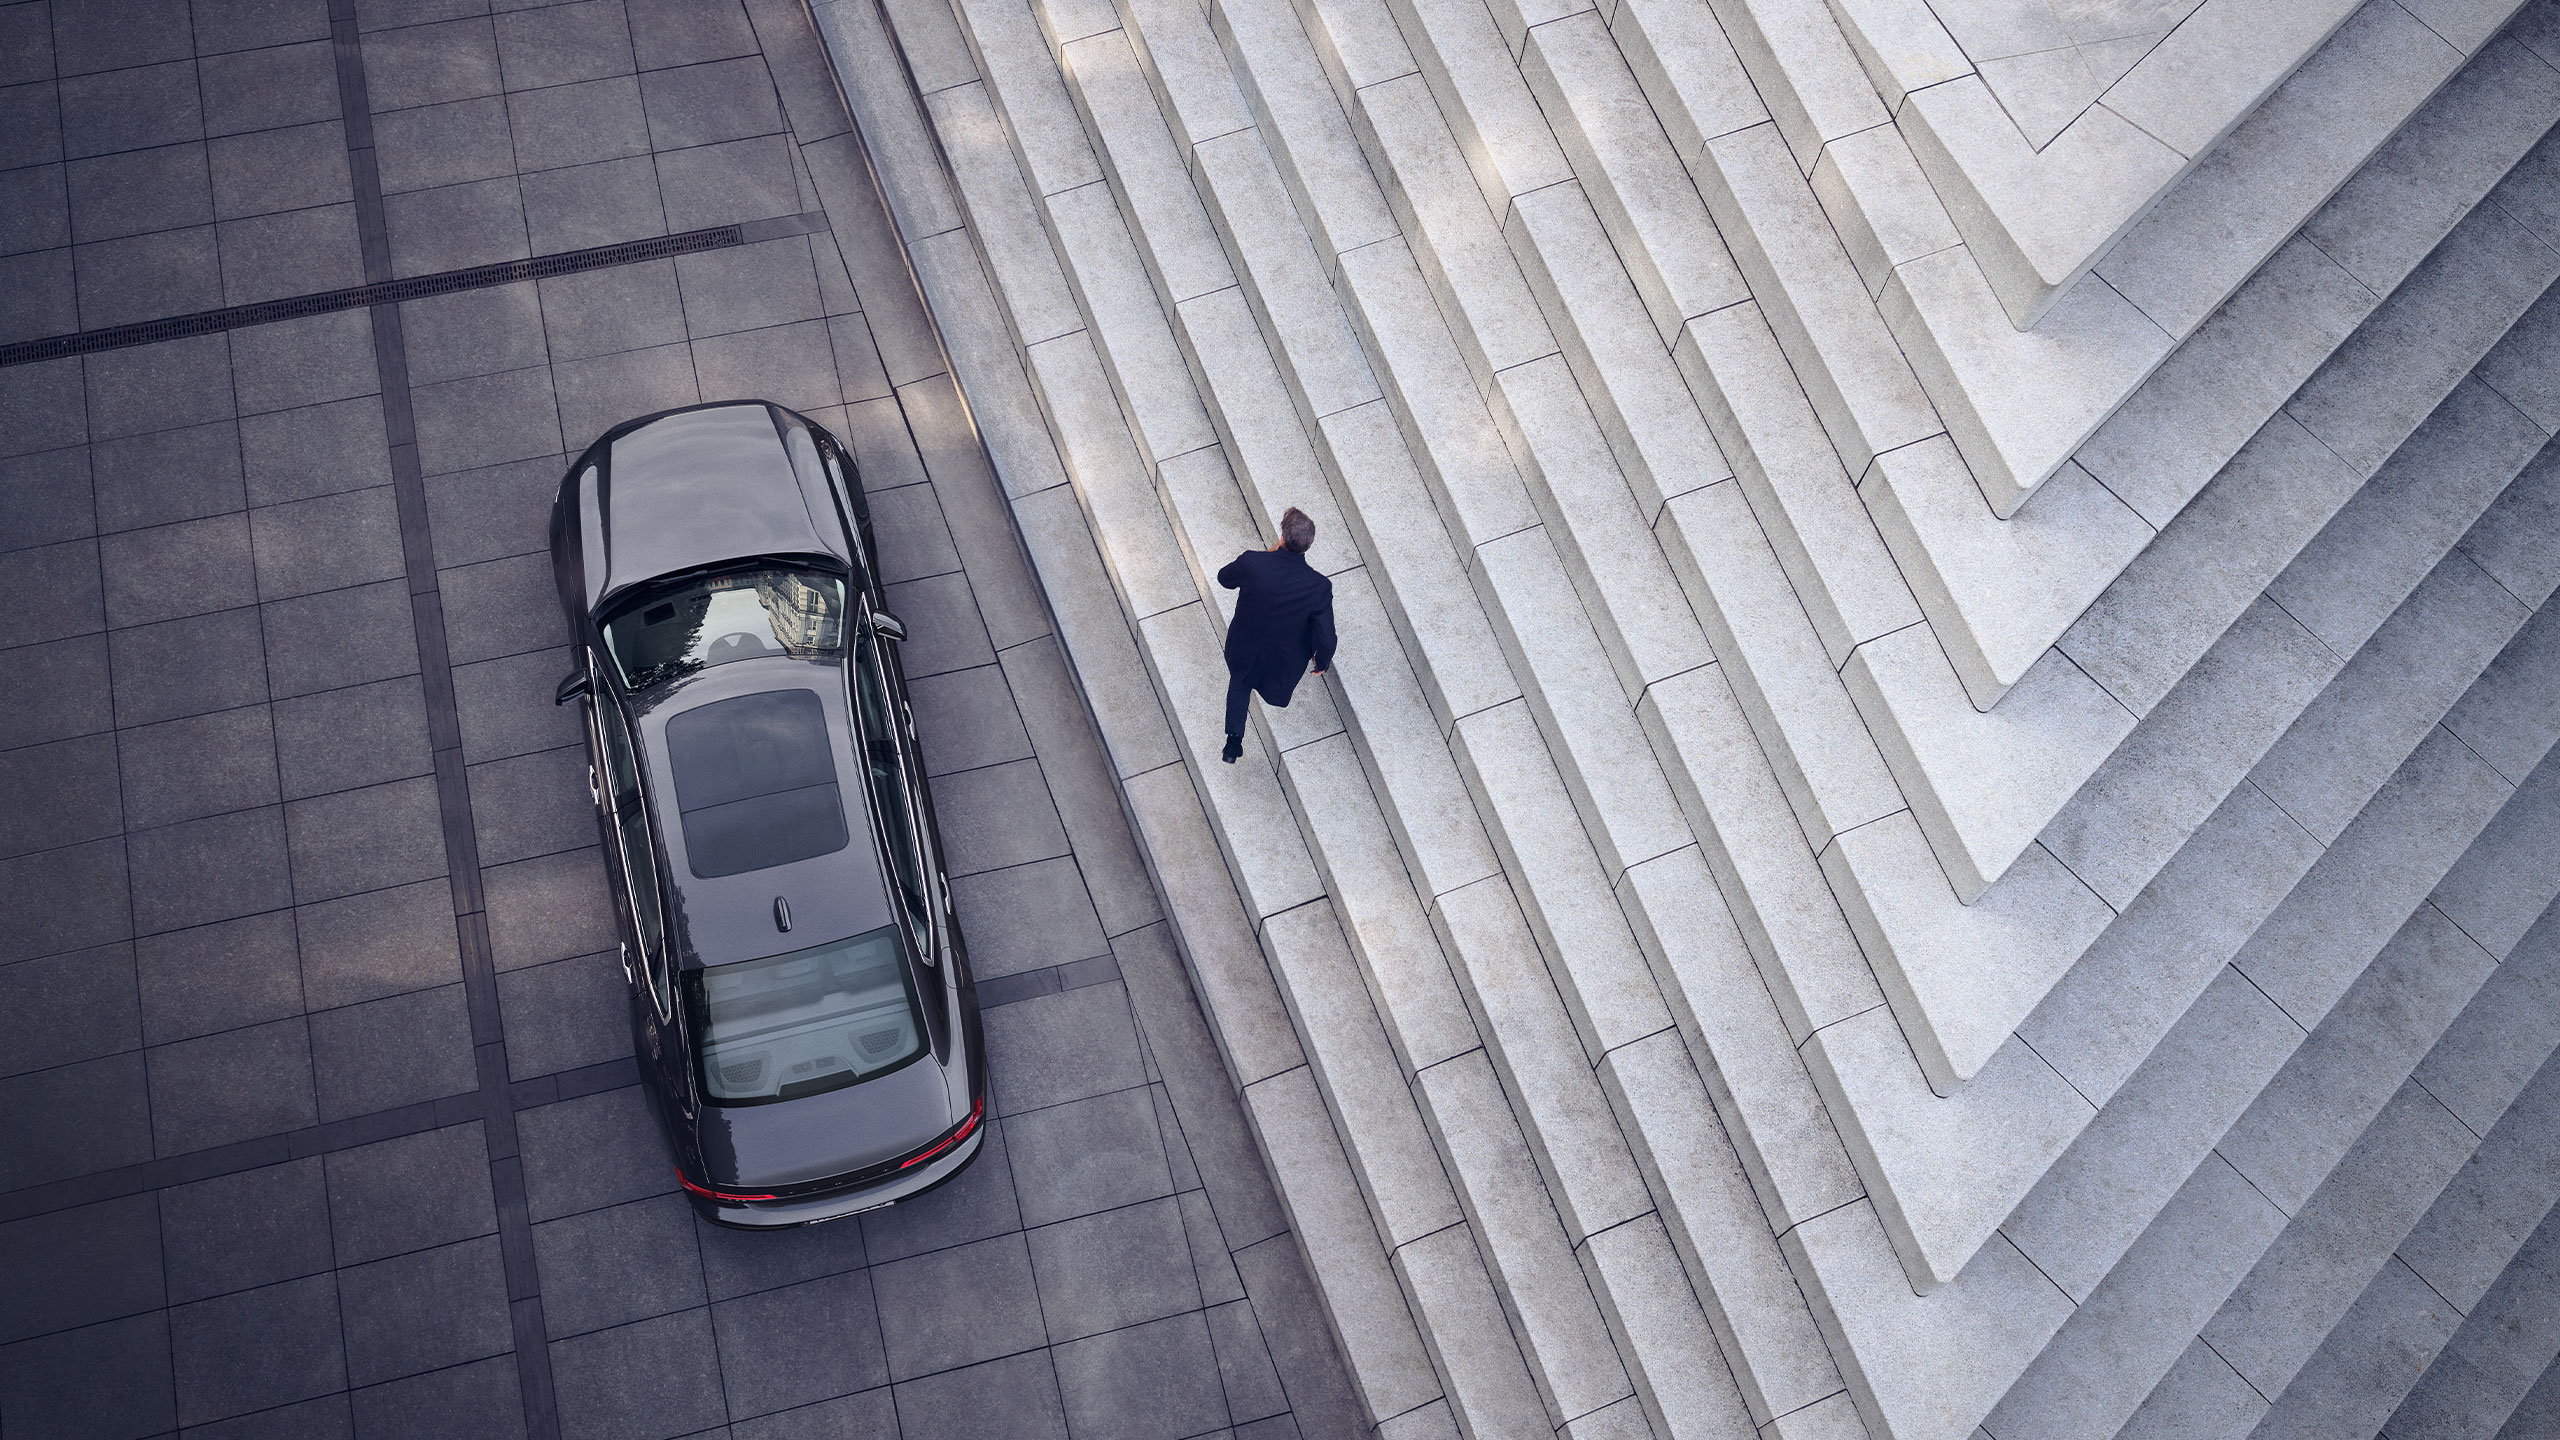 Vista aerea di un uomo che lascia la sua Volvo S90 parcheggiata accanto a scale di marmo con motivi grafici.